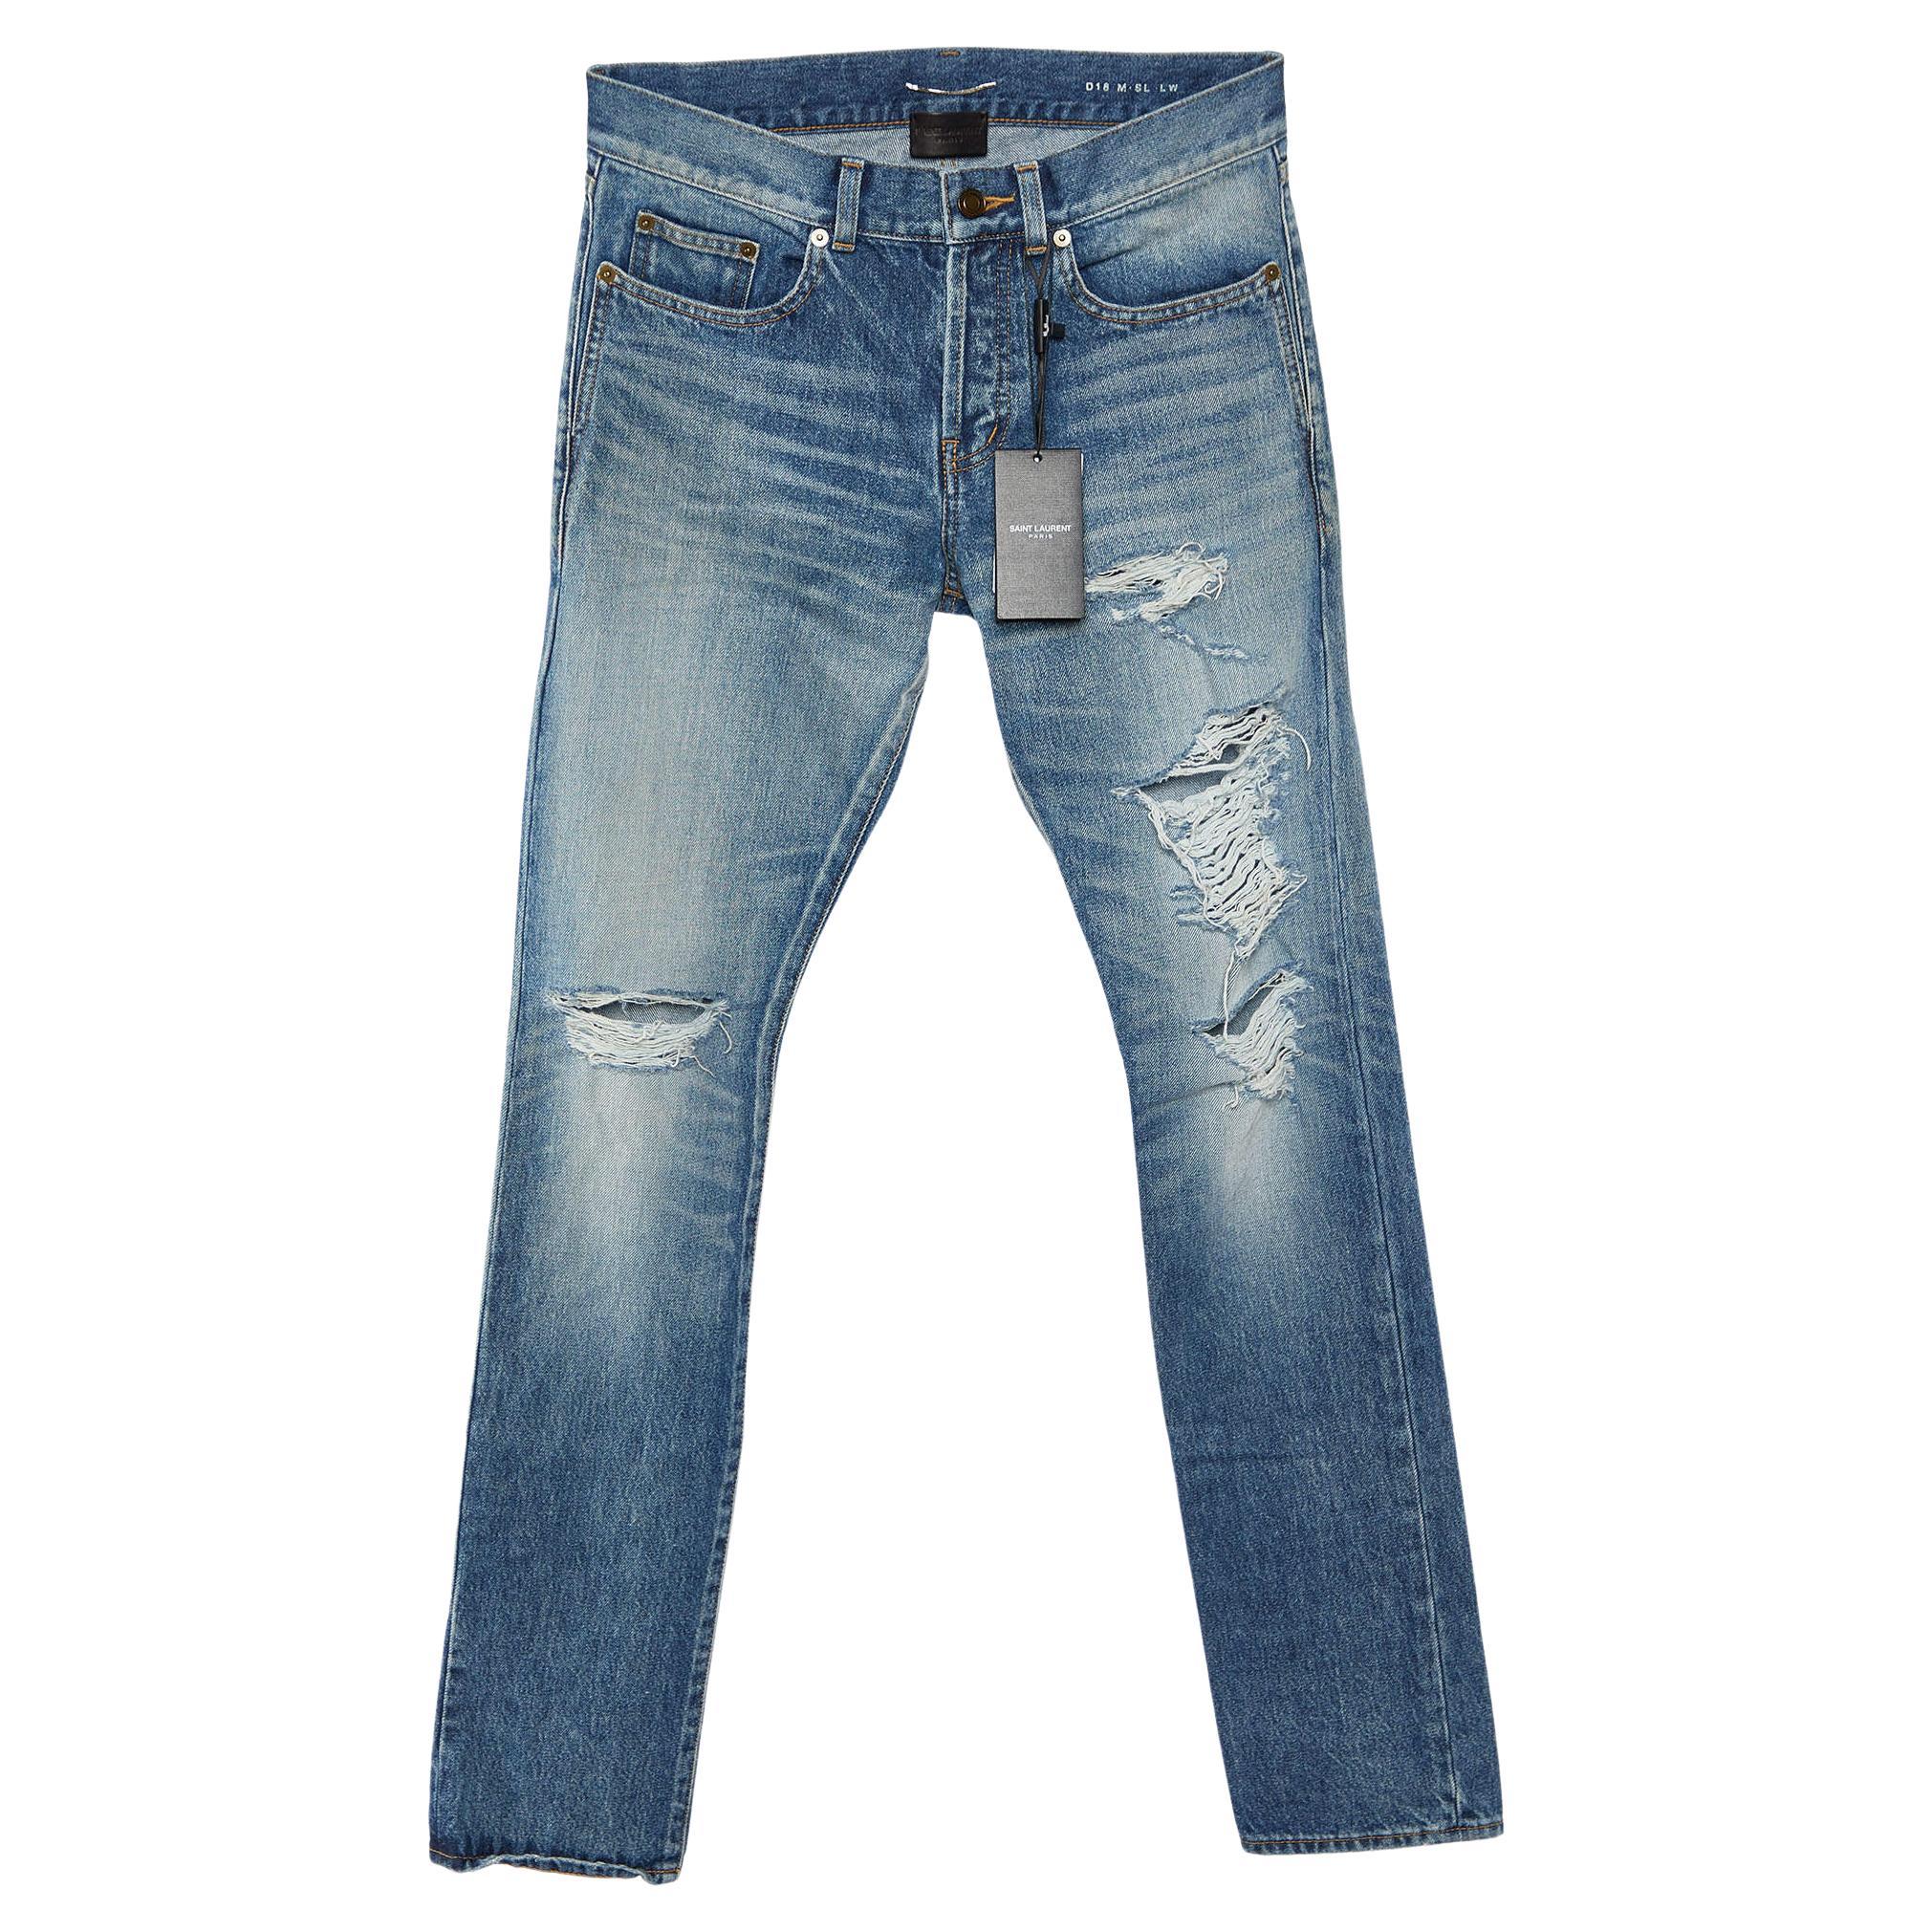 Saint Laurent Blue Distressed Denim Slim Fit Jeans S/Waist 32"